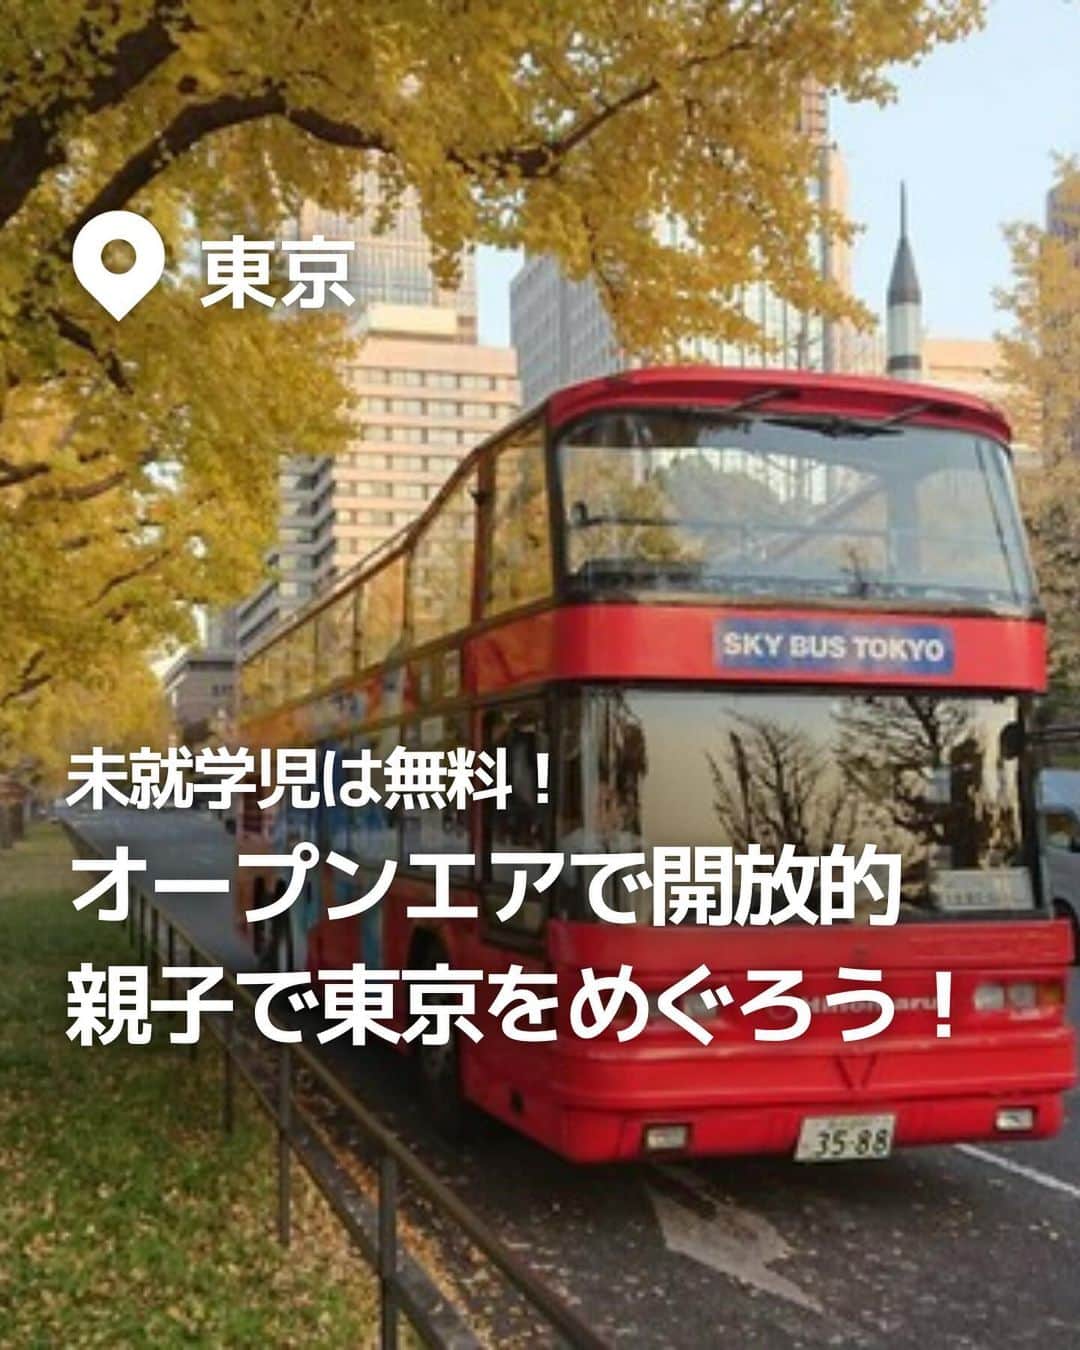 iko-yo（いこーよオフィシャル）のインスタグラム：「今回紹介したのは「オープンエアで開放的 親子で東京をめぐろう！」 @ikoyo_odekakeに他の投稿も！ ーーーーーーーーーーーーーーーーーーー 【#スカイバスTOKYO】 📍 東京都千代田区 街の中やニュースでよく見る「2階建ての赤いバス」！予約なしでも乗車可能で、気軽に乗ることができます！ まさに東京の街並みすべてが"アトラクション"♪途中下車も可能な「スカイホップバス」も人気です。 春は桜、秋には紅葉など、四季を感じることのできる季節限定コースもあります。  ※2023年10月17日時点の情報です。最新の情報は公式HPをご確認下さい。　 ーーーーーーーーーーーーーーーーーーー おでかけ情報量は日本最大級！  子どもとお出かけ情報サイト「いこーよ」 「親子でおでかけしたい場所」をご紹介させていただいています！  お子さんとのおでかけの思い出の写真を、このアカウントをフォローの上#いこーよ #いこーよおでかけ部 をつけてぜひ投稿してください。魅力的な写真は、いこーよ公式SNSで紹介させていただきます！  募集中タグ#いこーよ　#いこーよおでかけ部 「子どもと行きたい！」と思ったら保存が便利！  プロフィールのURLから「いこーよ」のサイトに行くと、他の投稿やオトクな情報などが載っています♪  ☞ @ikoyo_odekake  #いこーよ #お出かけ #おでかけ#子連れおでかけ #お出かけスポット #子連れ#関東ママ#スカイバス#赤いバス#東京観光#東京#tokyo#丸の内#紅葉#銀杏並木#いちょう並木#イチョウ並木」